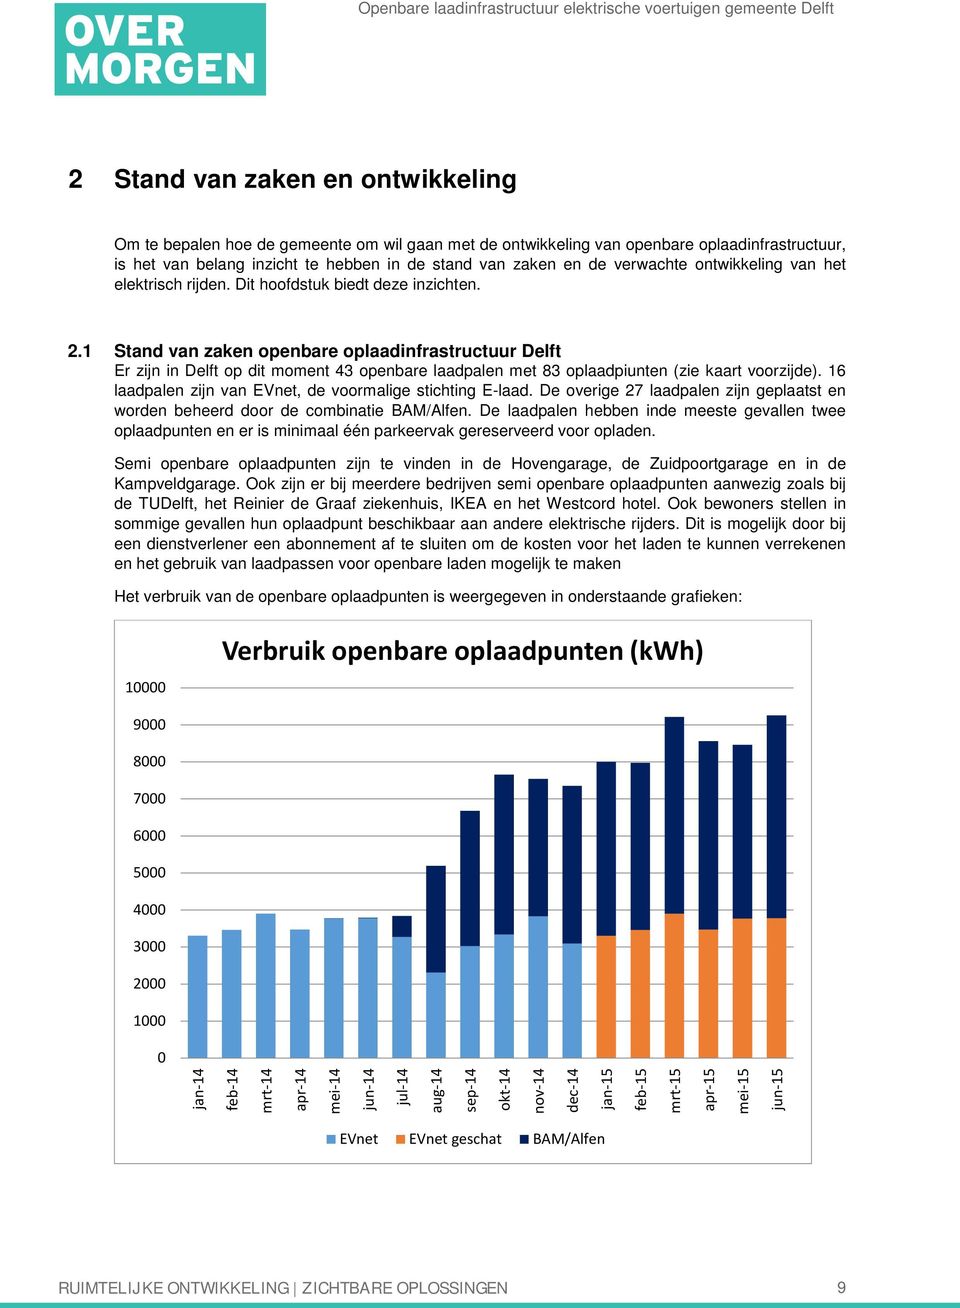 1 Stand van zaken openbare oplaadinfrastructuur Delft Er zijn in Delft op dit moment 43 openbare laadpalen met 83 oplaadpiunten (zie kaart voorzijde).